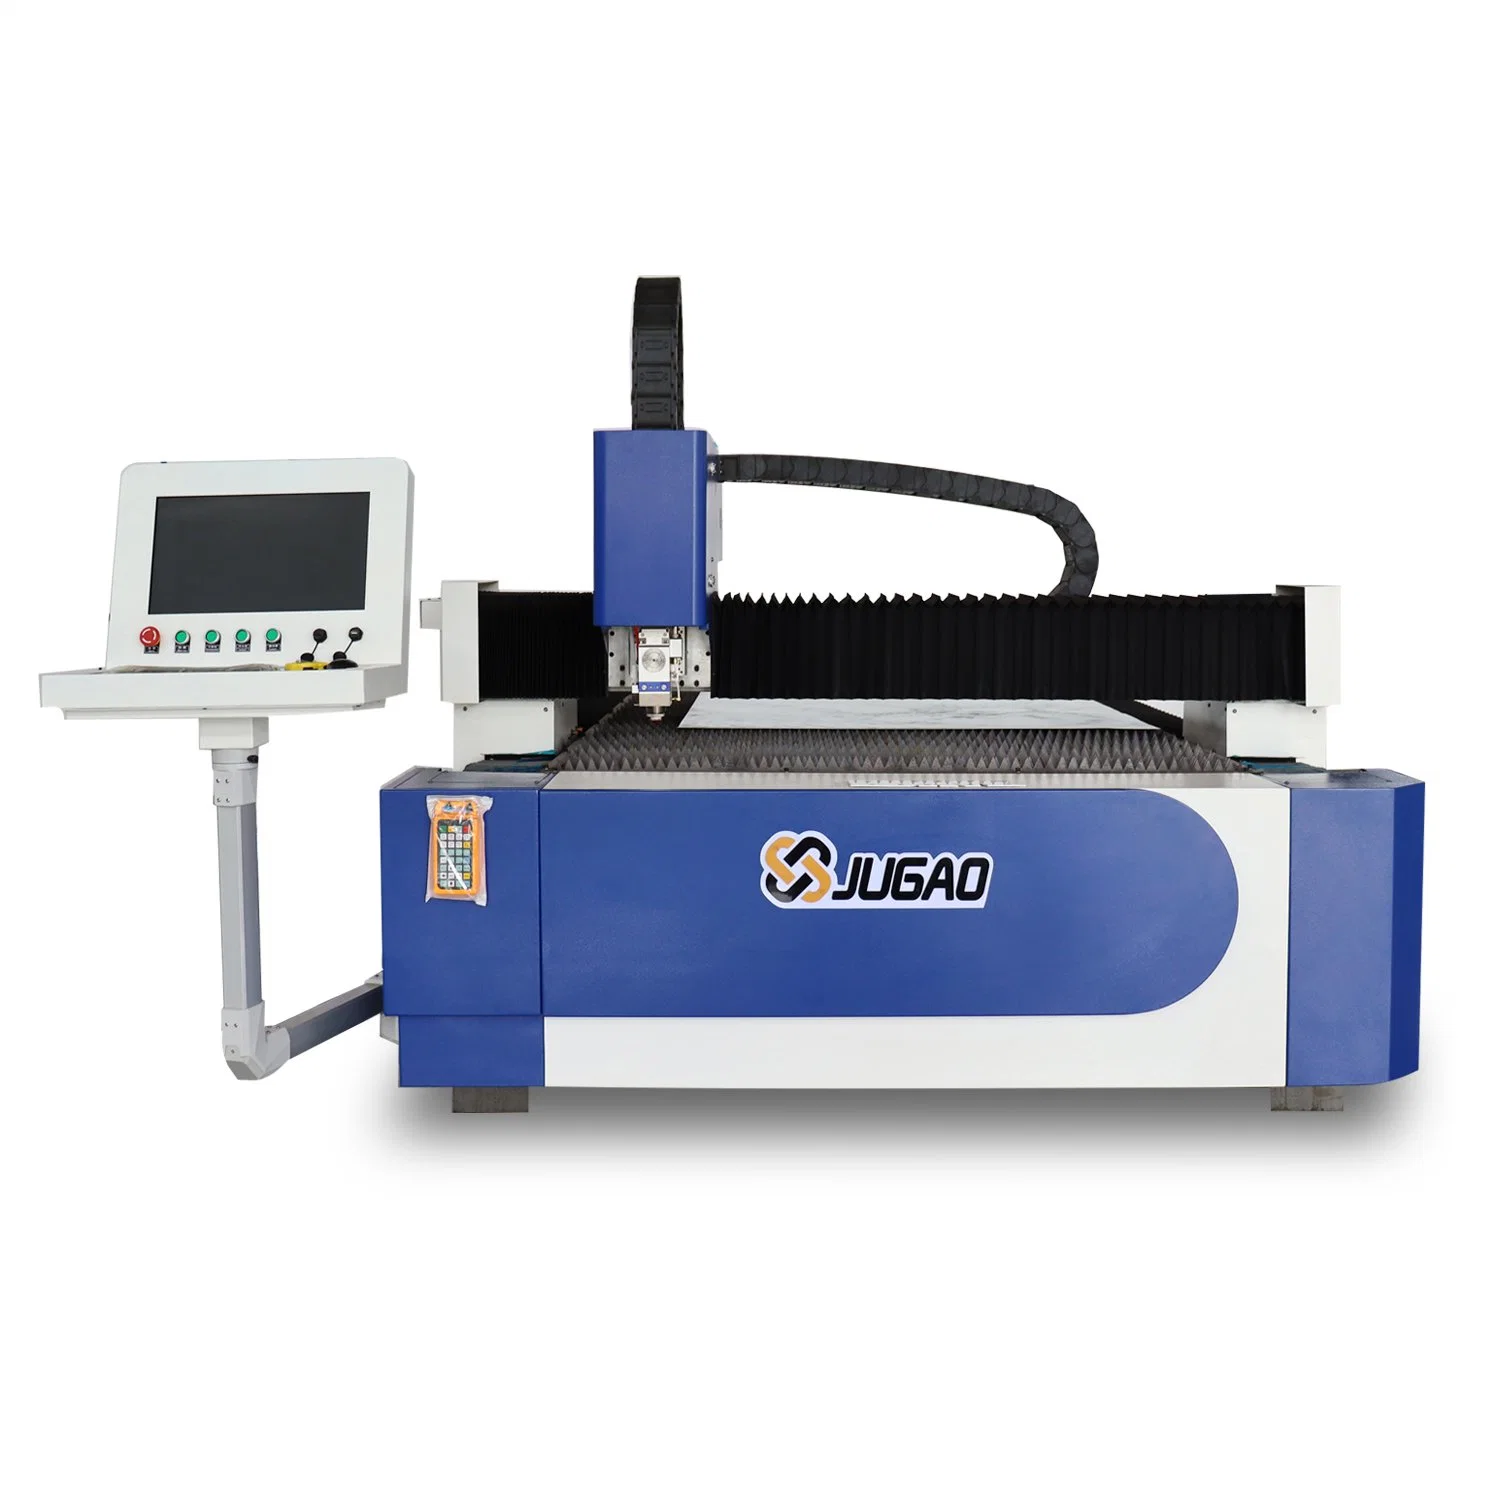 L'IPG grande puissance de l'argent rentable de faire machine de découpage au laser à filtre de feuille de métal